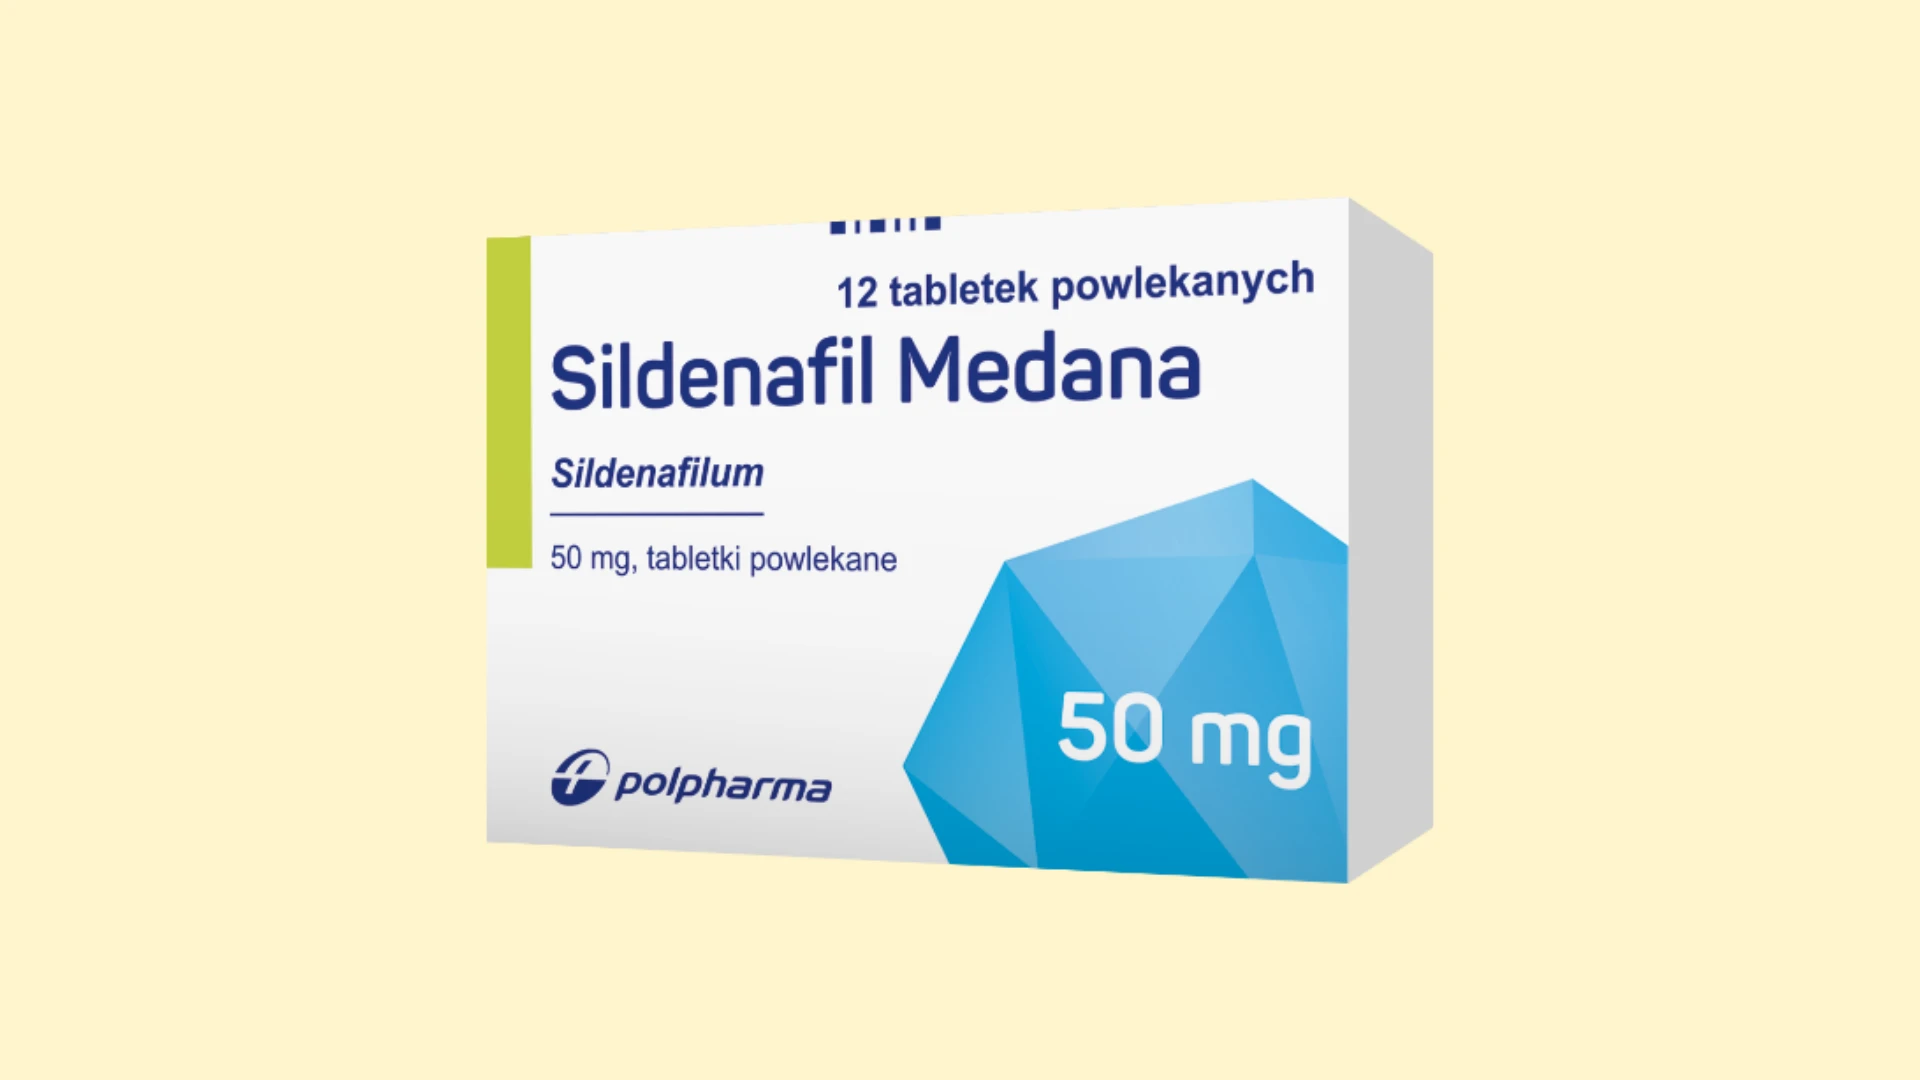 Sildenafil Medana - Recepta online - e-Recepta z konsultacją | cena, dawkowanie, przeciwwskazania